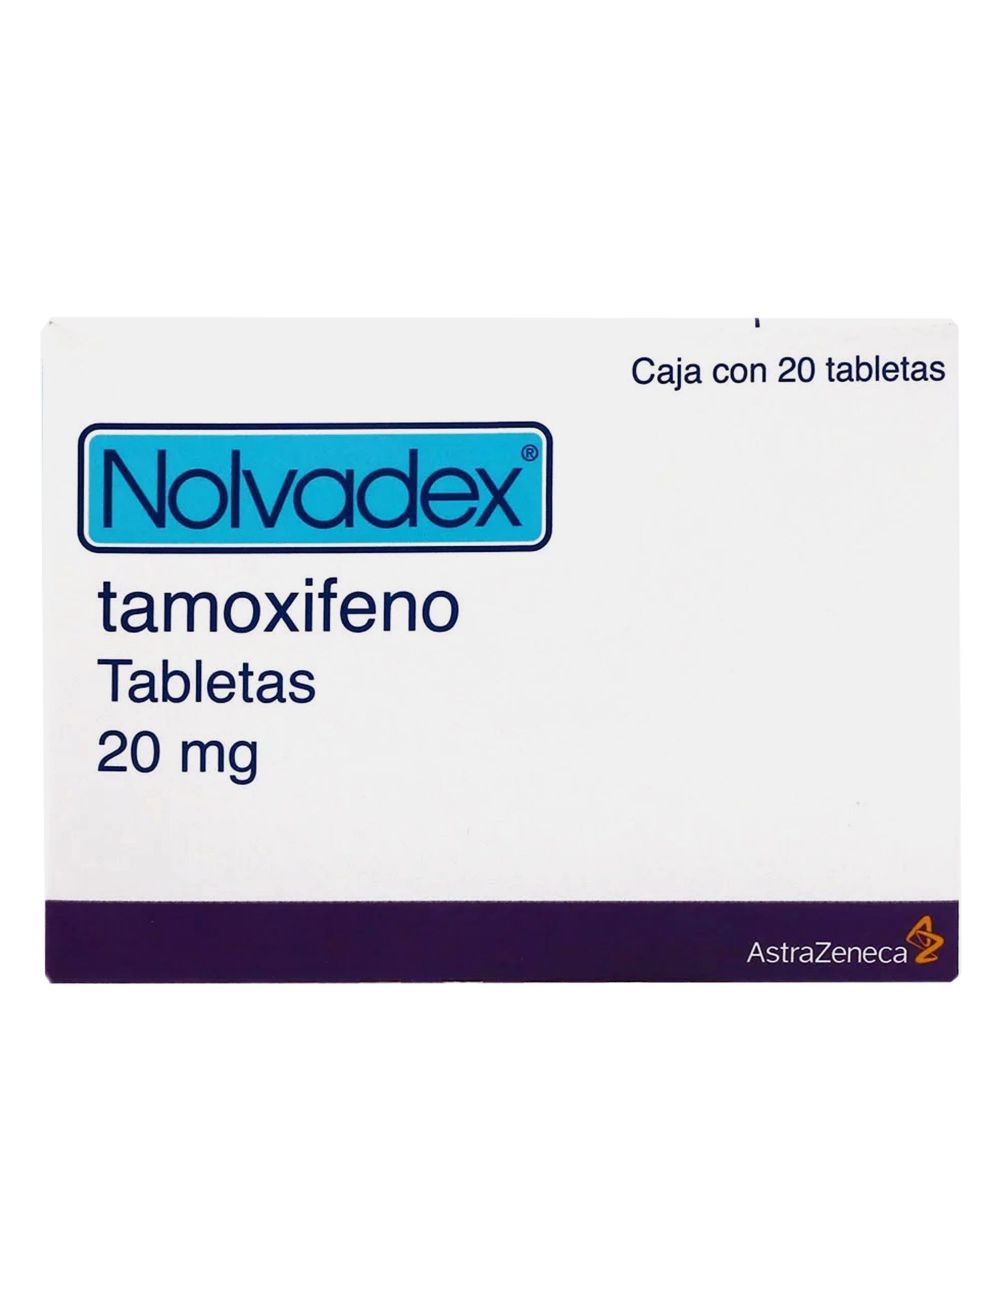 Es un medicamento no esteroide derivado del trifeniletileno que ejerce un complejo espectro de efectos farmacolgicos antagonistas y agonistas de los estrgenos en distintos tejidos